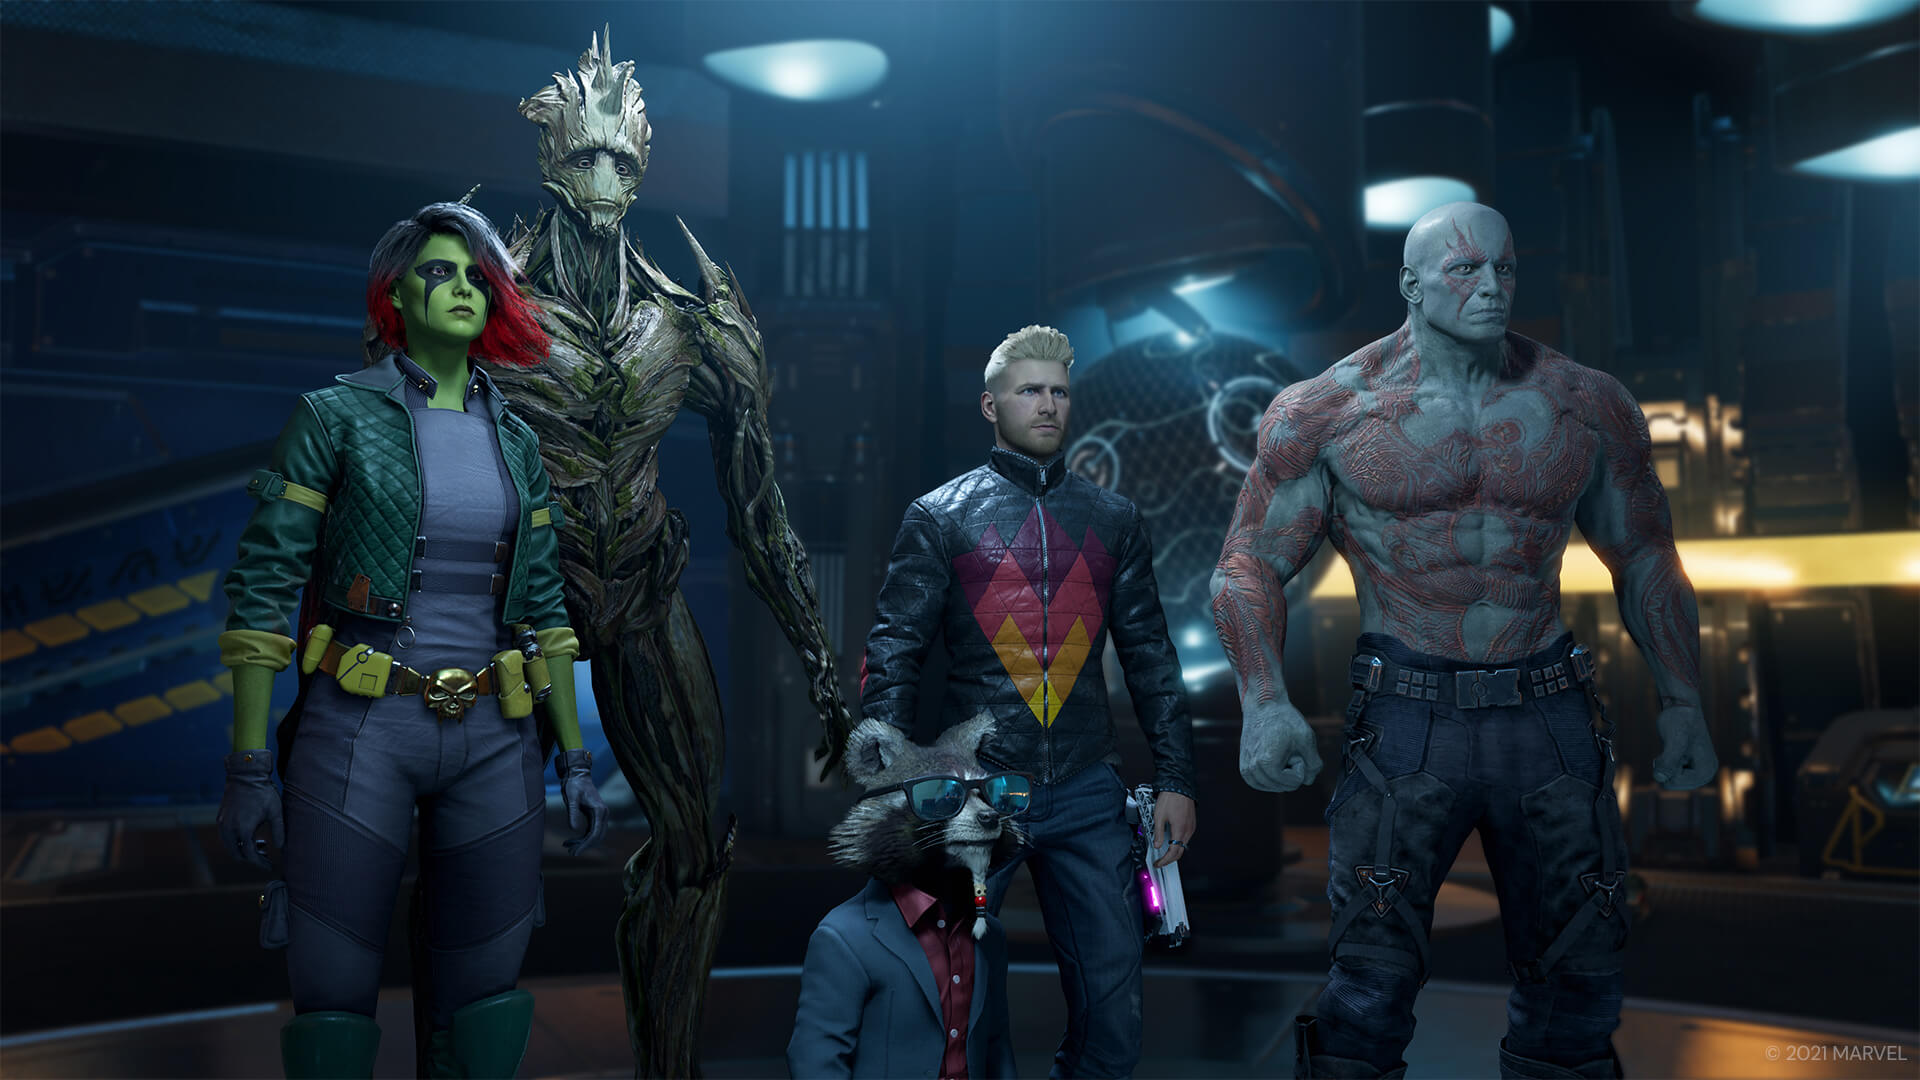 Marvel's Guardians of the Galaxy gratis en Epic Games hasta el 11 de enero